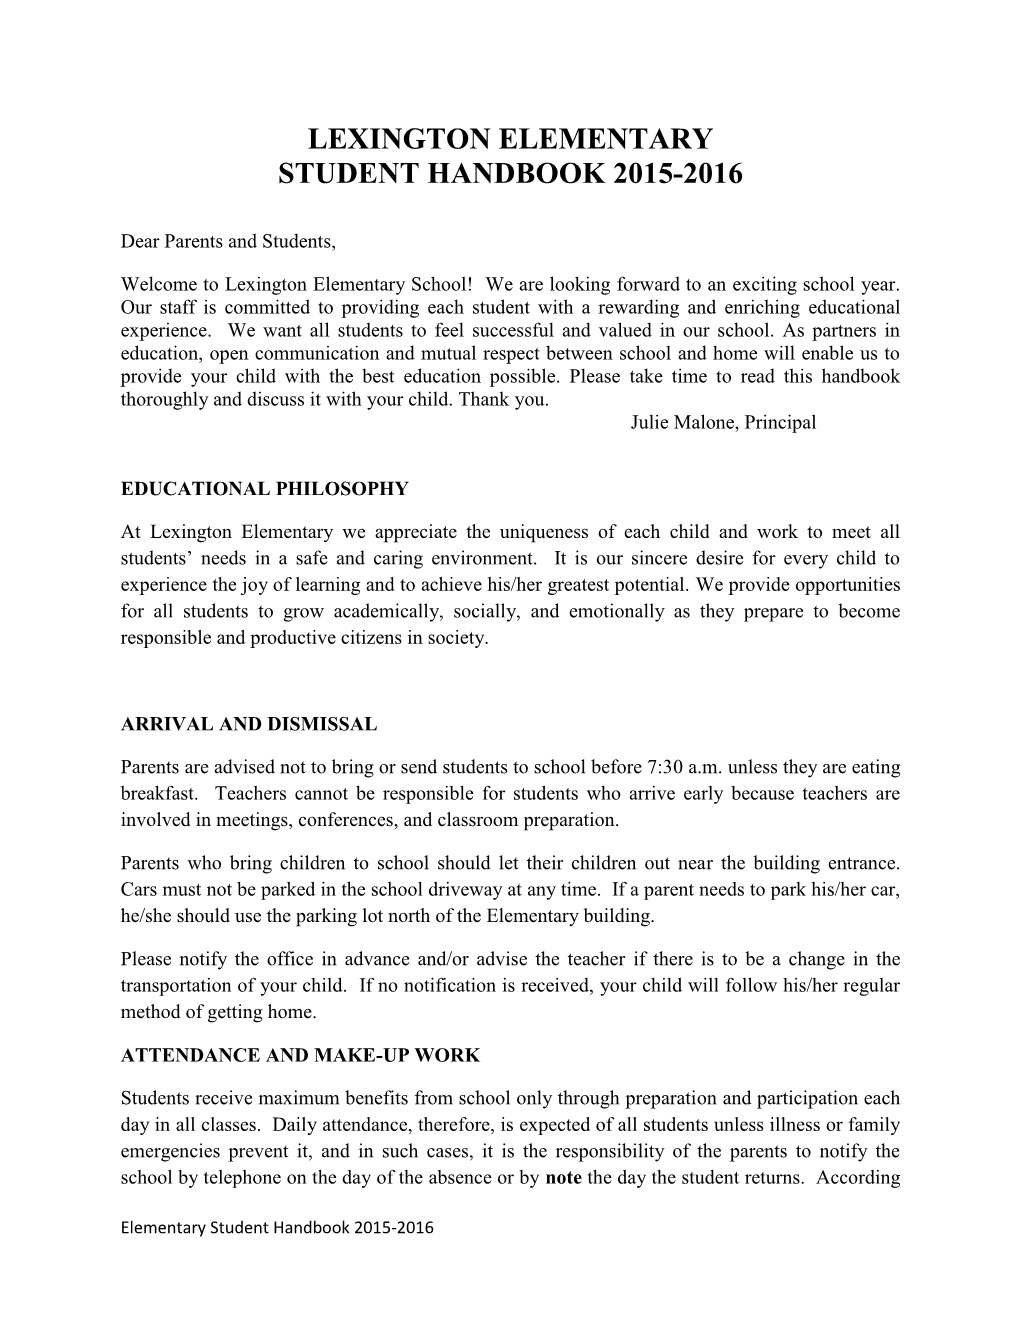 Lexington Elementary Student Handbook 2015-2016